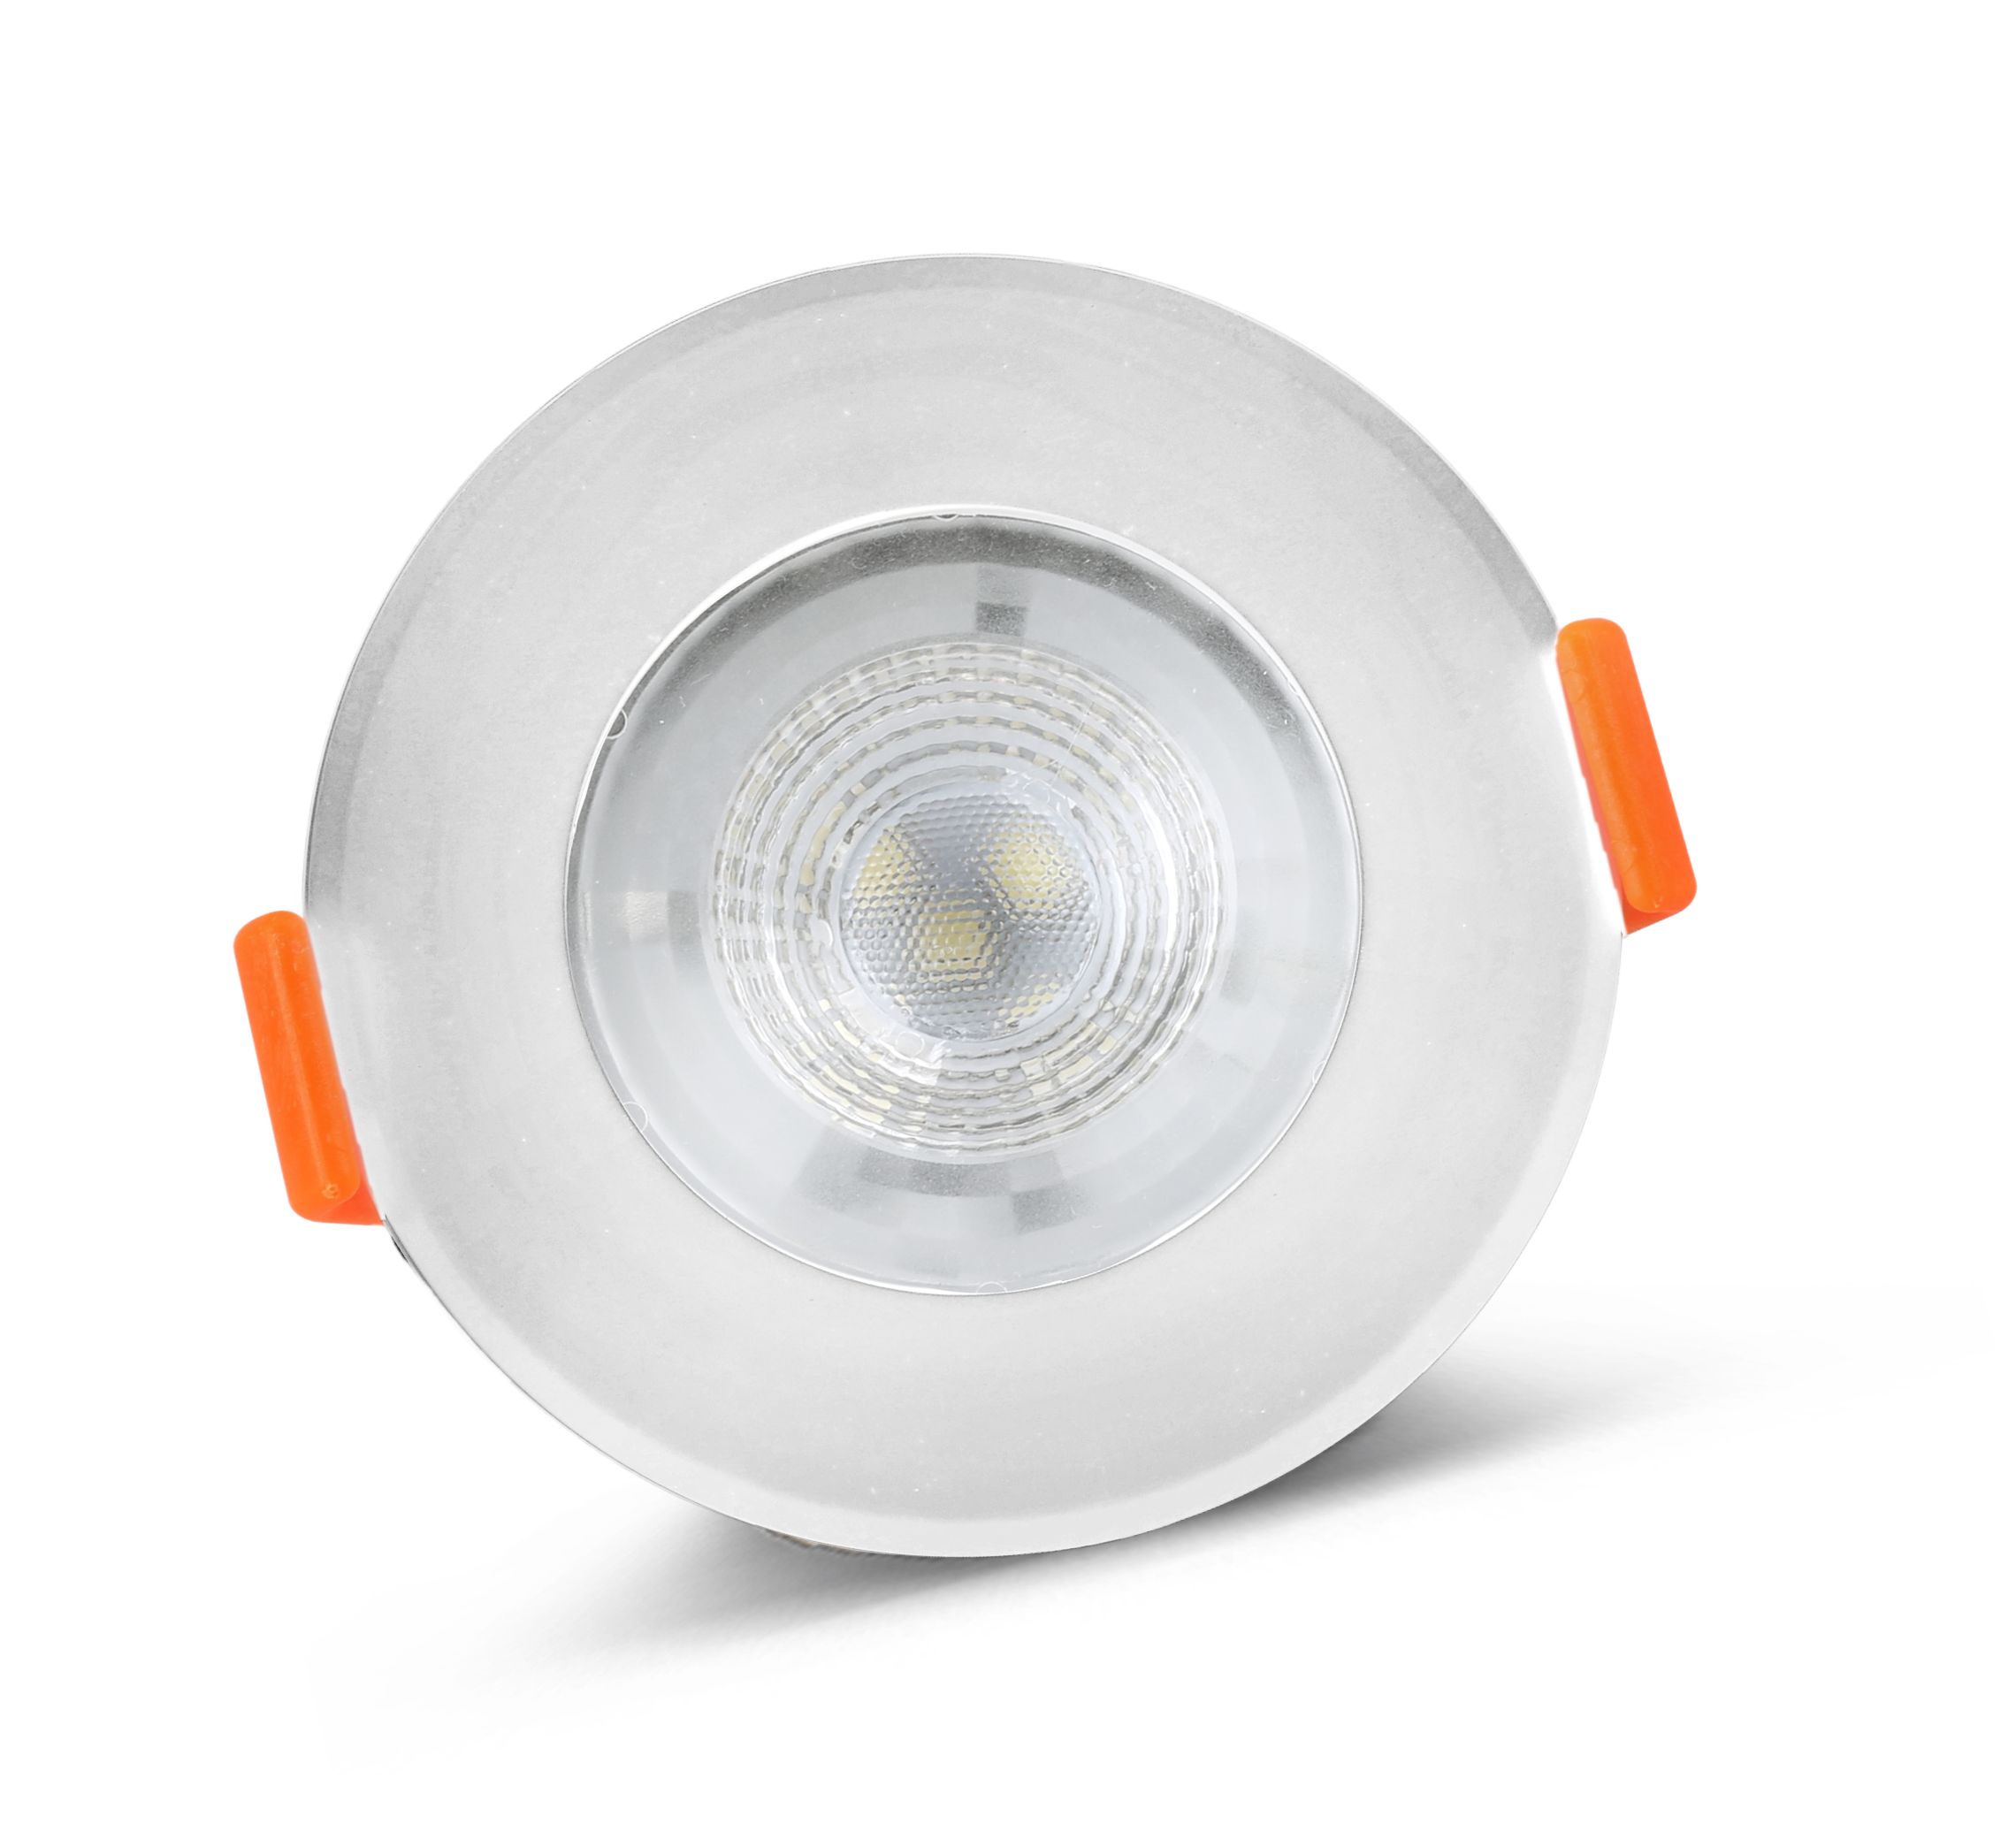 White 5W Plastic SMD LED Ceiling Light